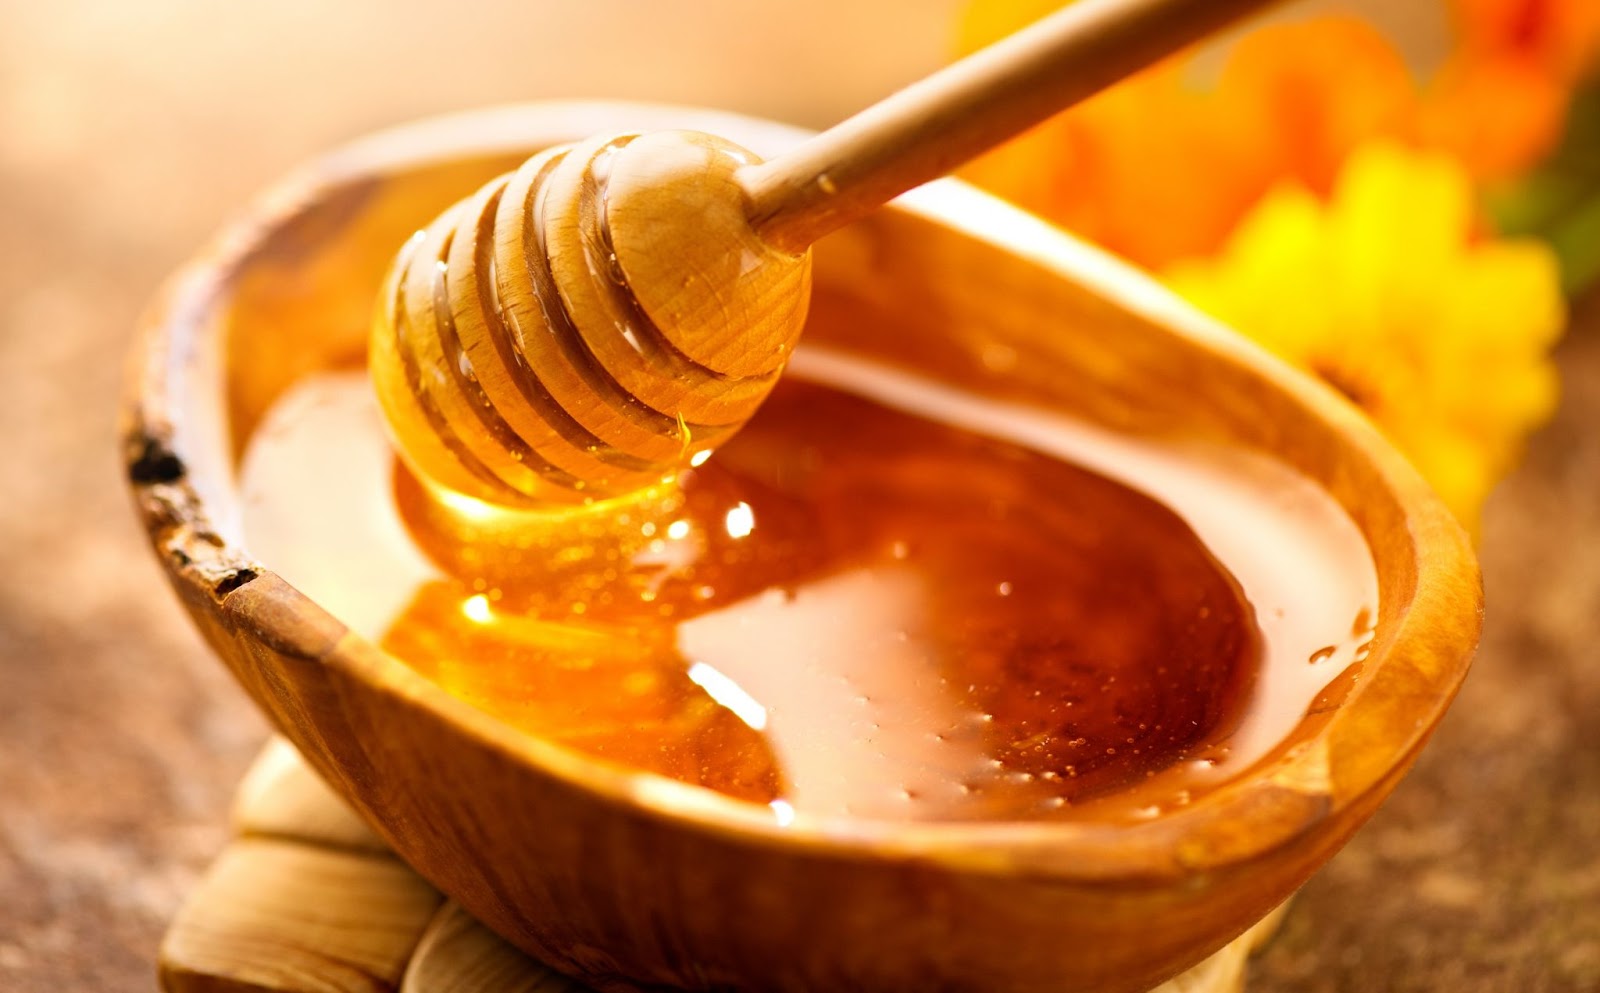 Chữa mặn bằng mật ong hiệu quả cùng STAVI